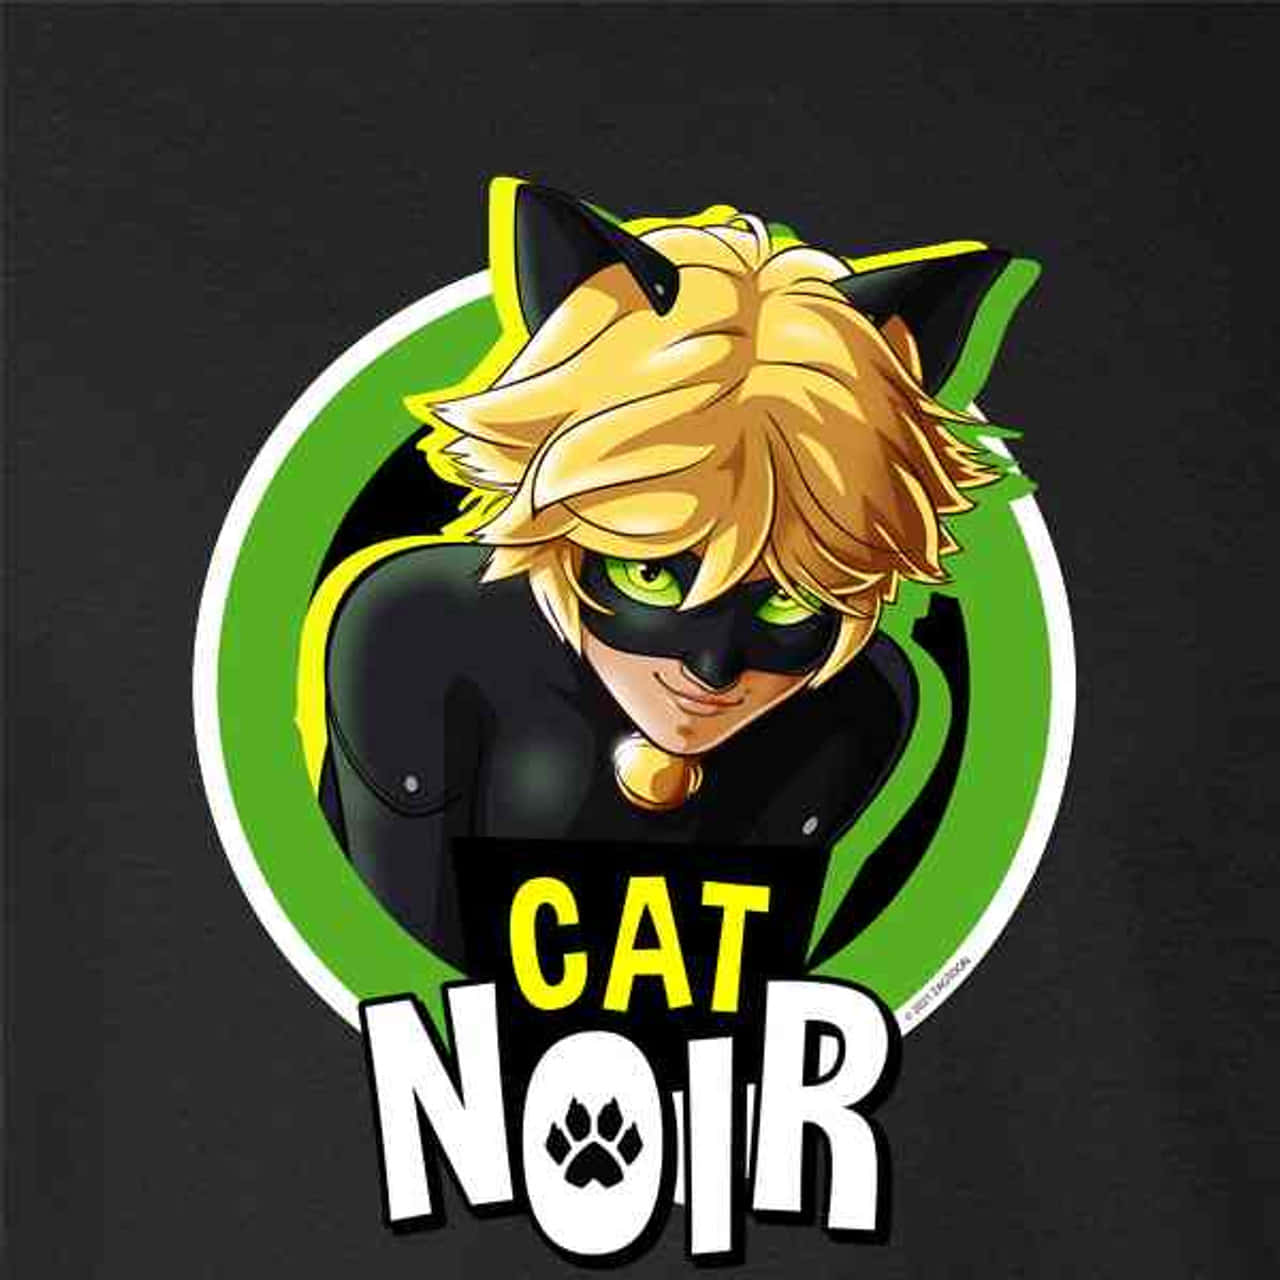 Presentamosa Cat Noir, Una Versión Moderna De Los Héroes Clásicos Que Hemos Aprendido A Querer.